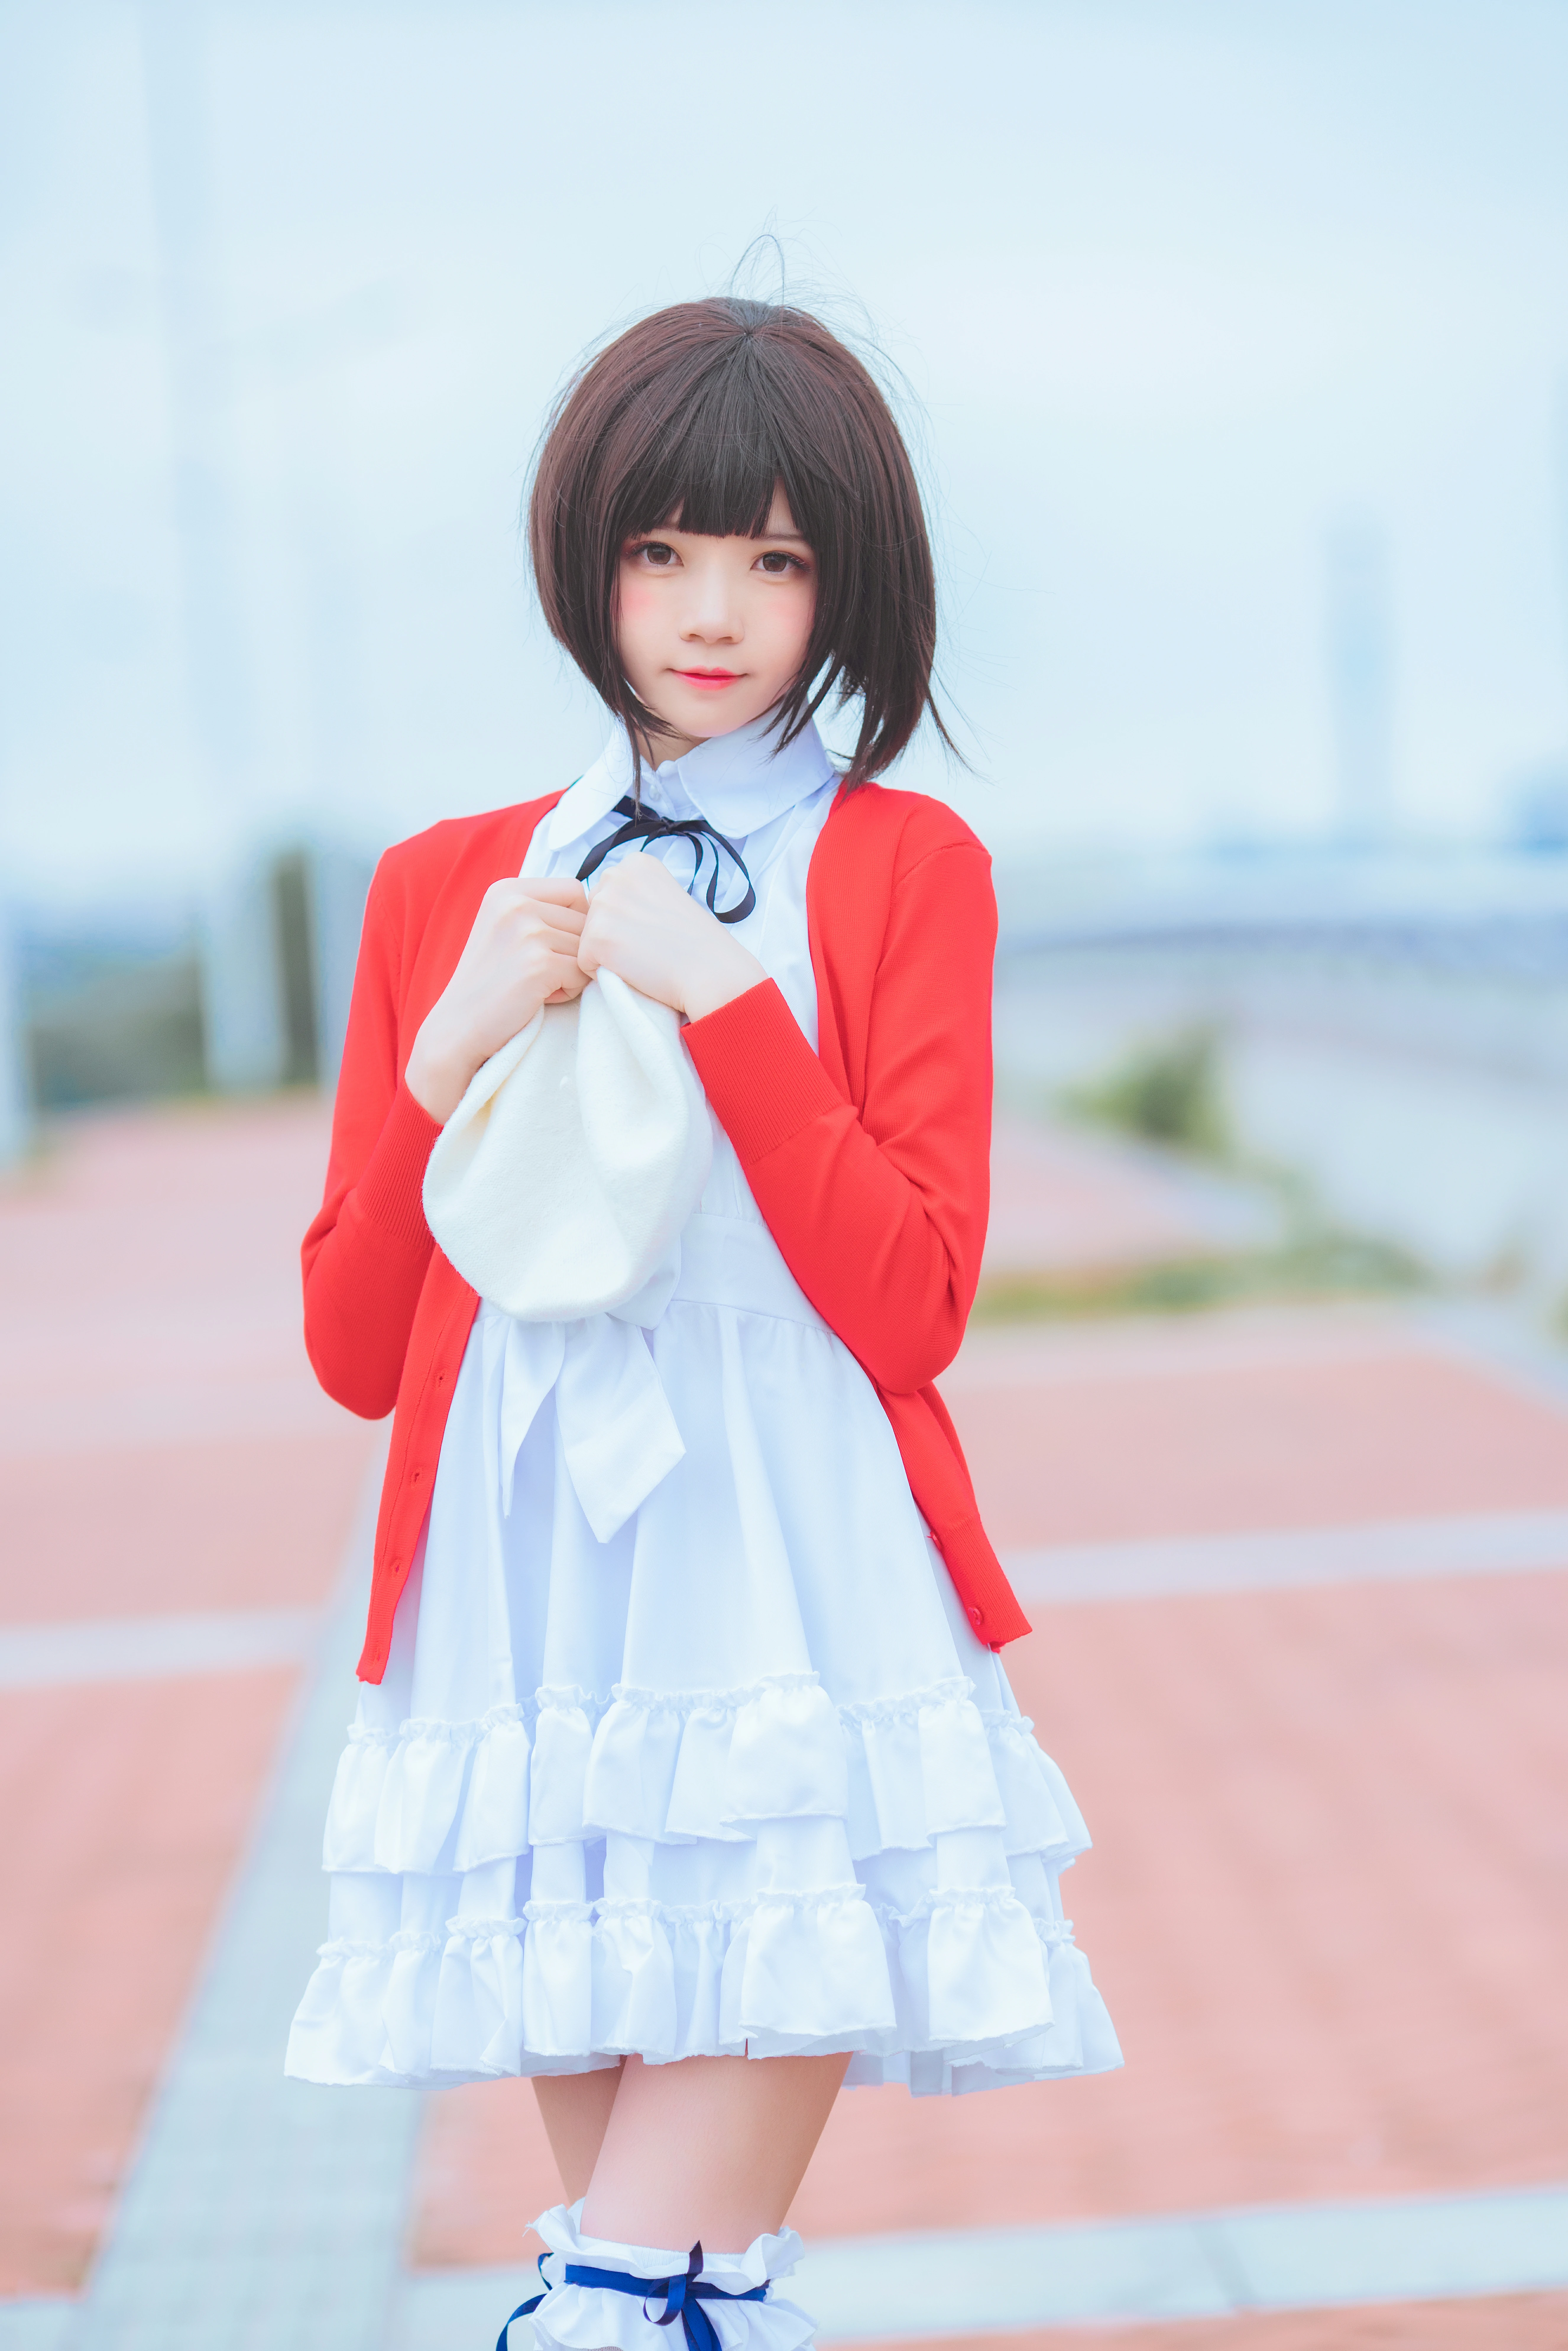 清纯少女 桜桃喵 红色外套与白色连衣裙加白色丝袜美腿街拍写真,0022